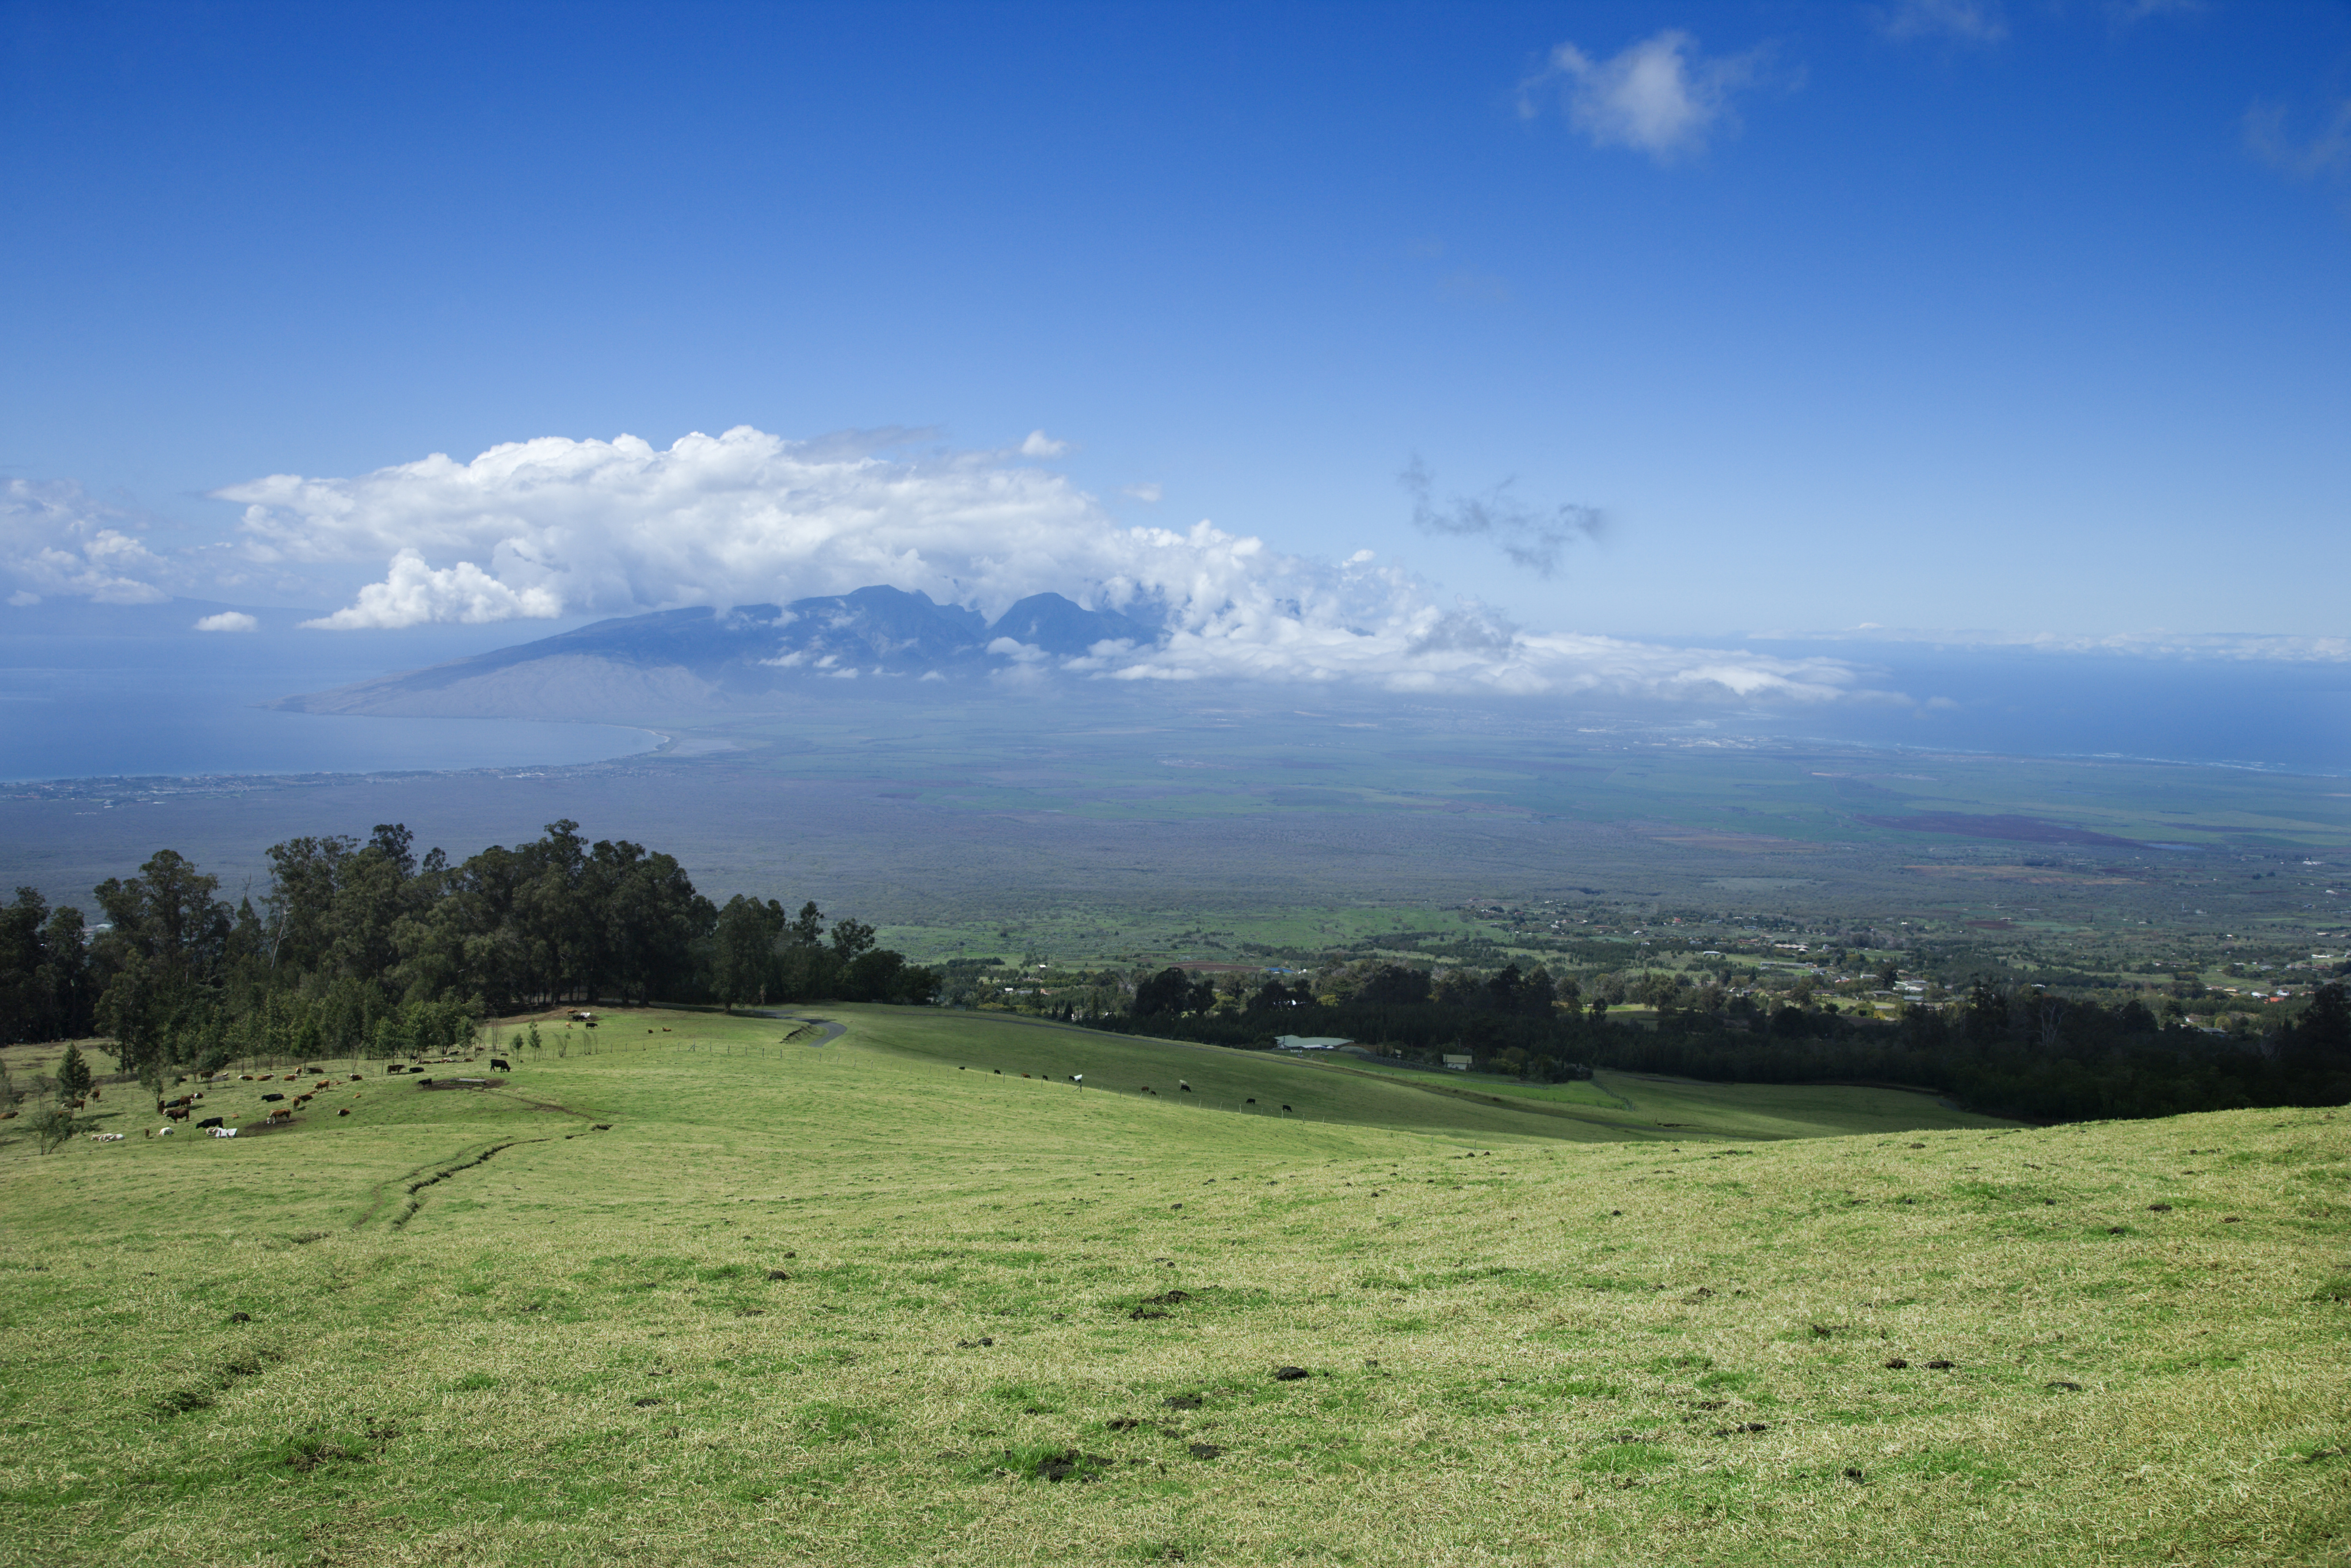 Skyline Zipline landscape of Upcountry Maui